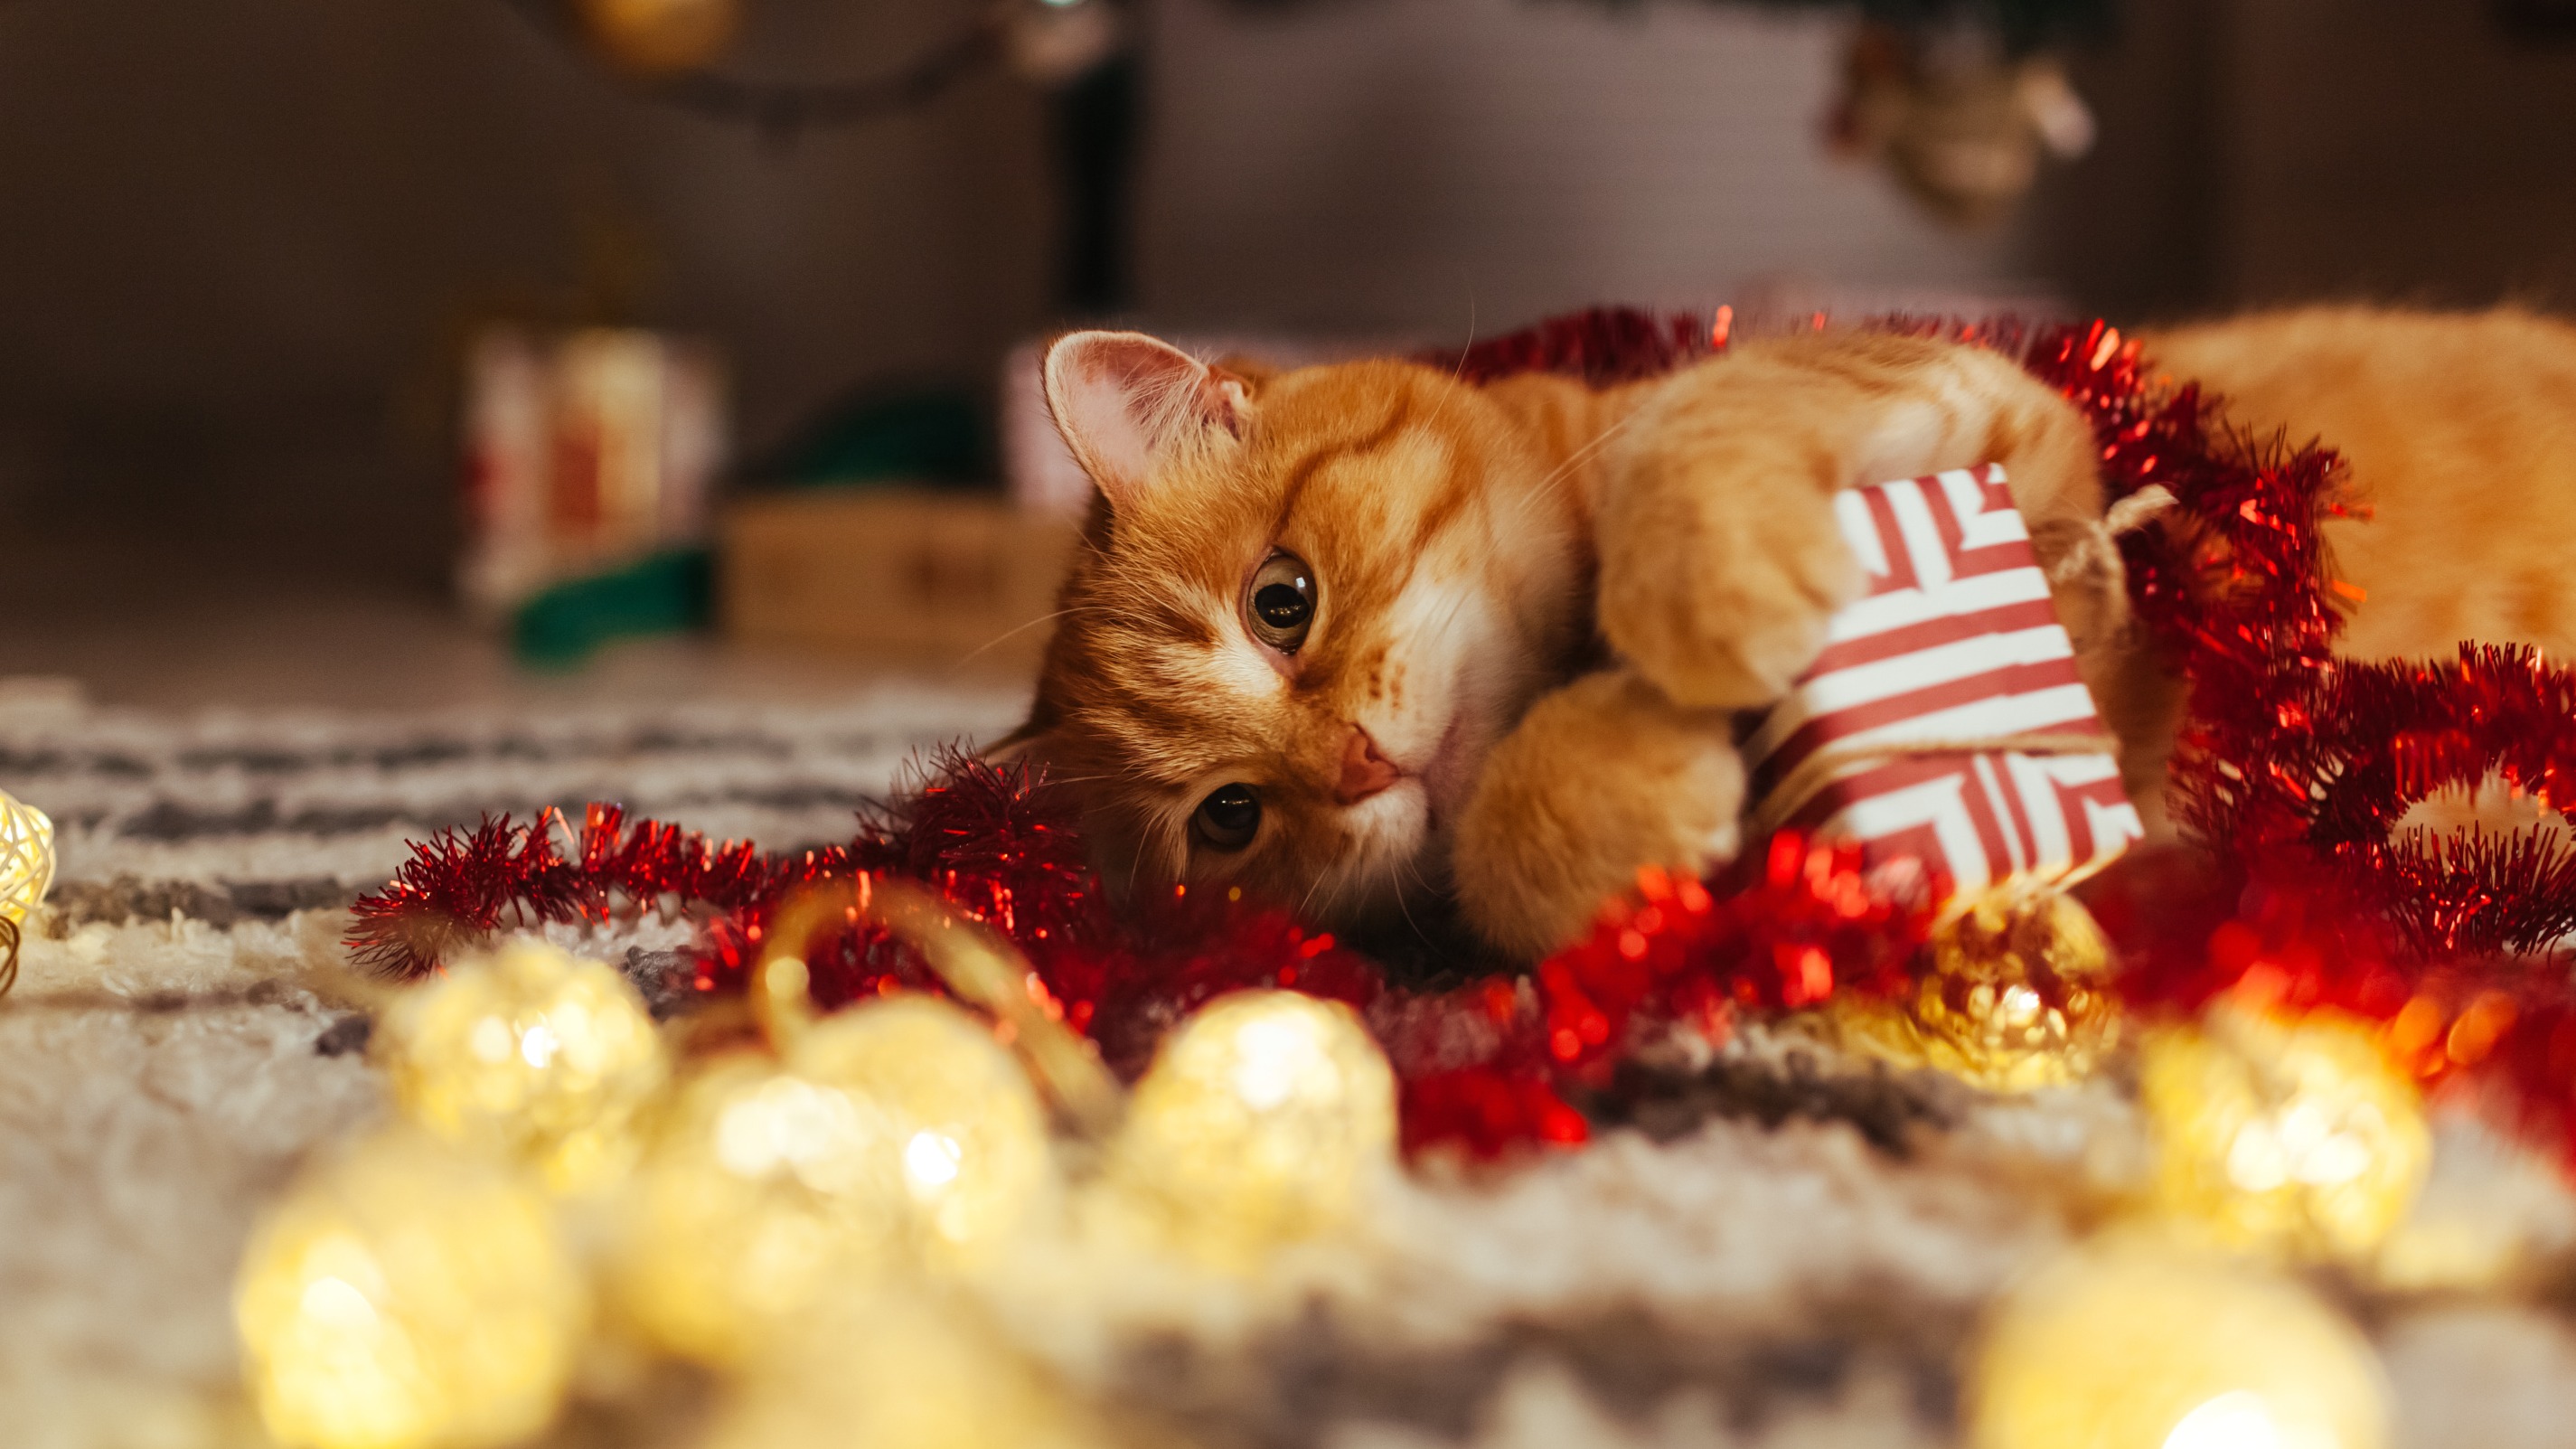 Jouet pour chat : nos idées de cadeaux de Noël pour les chats